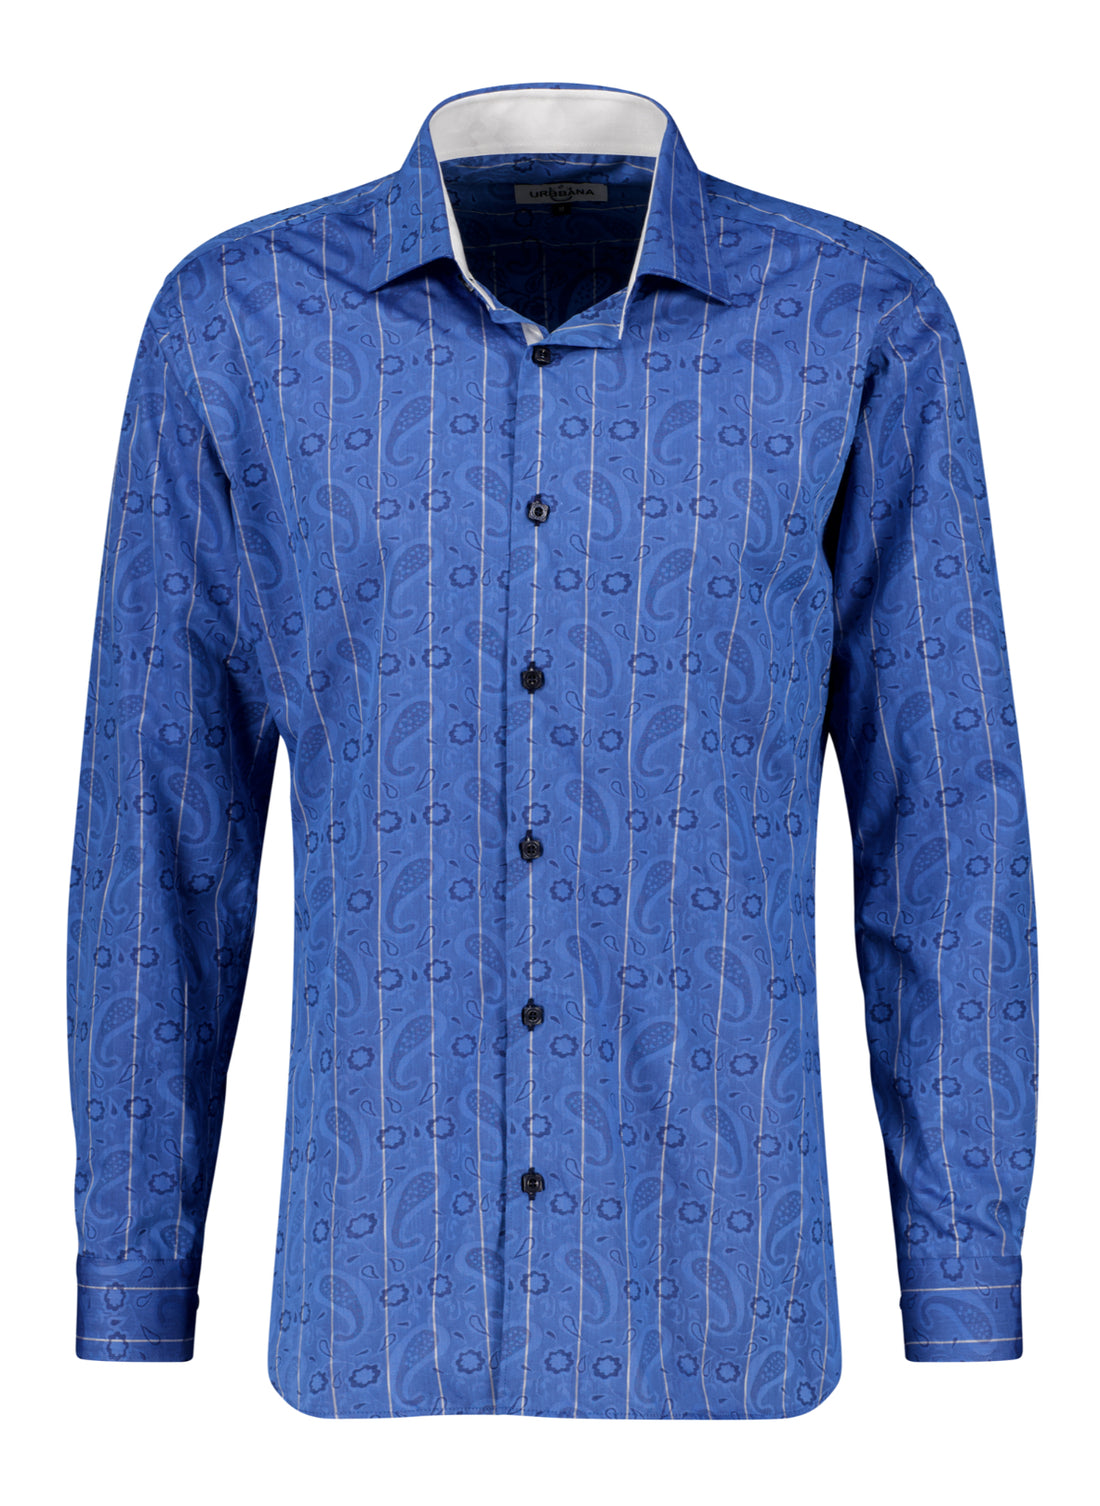 The Mavi Paisley Shirt - Shirt by Urbbana